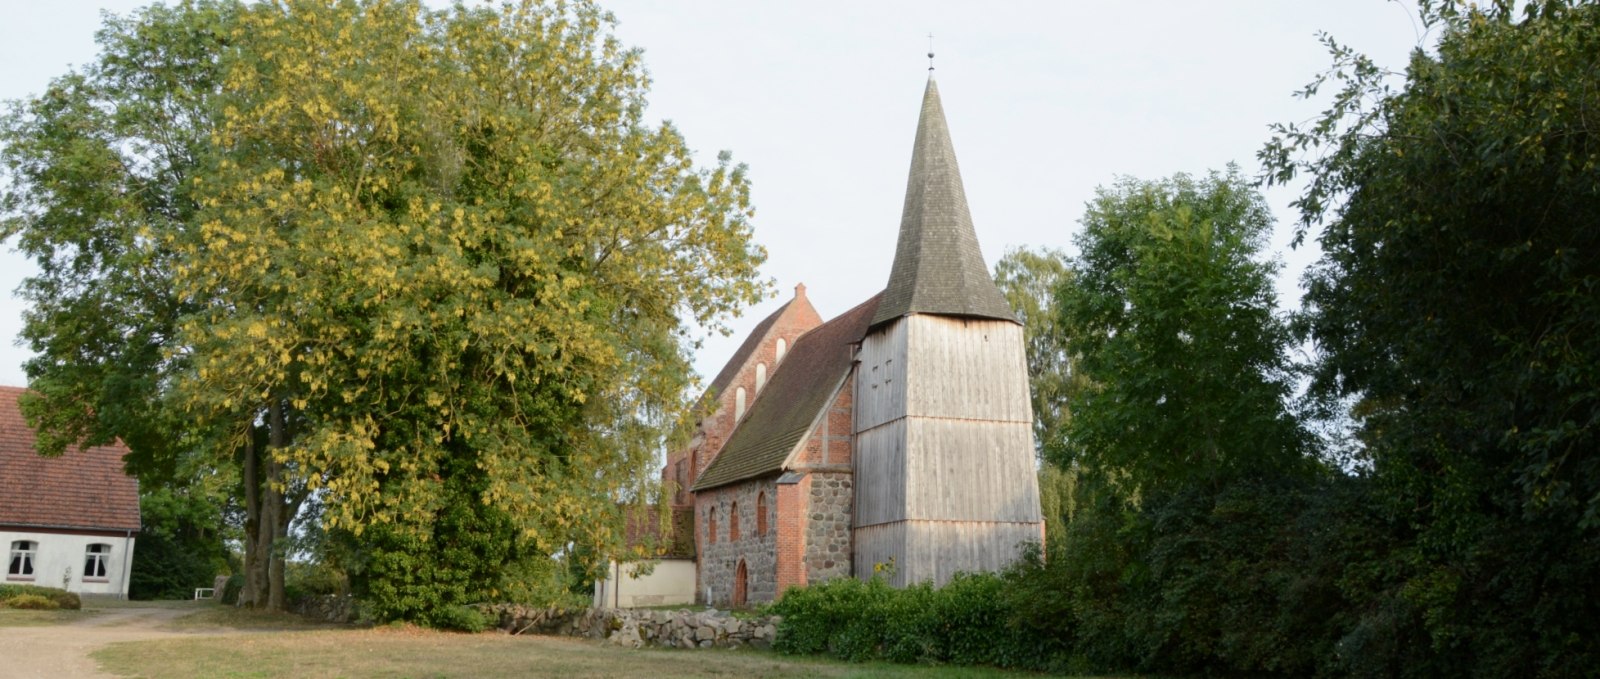 Die mittelalterliche Dorfkirche von Kuppentin  im Spätsommer., © Tourismusverband Mecklenburg-Schwerin